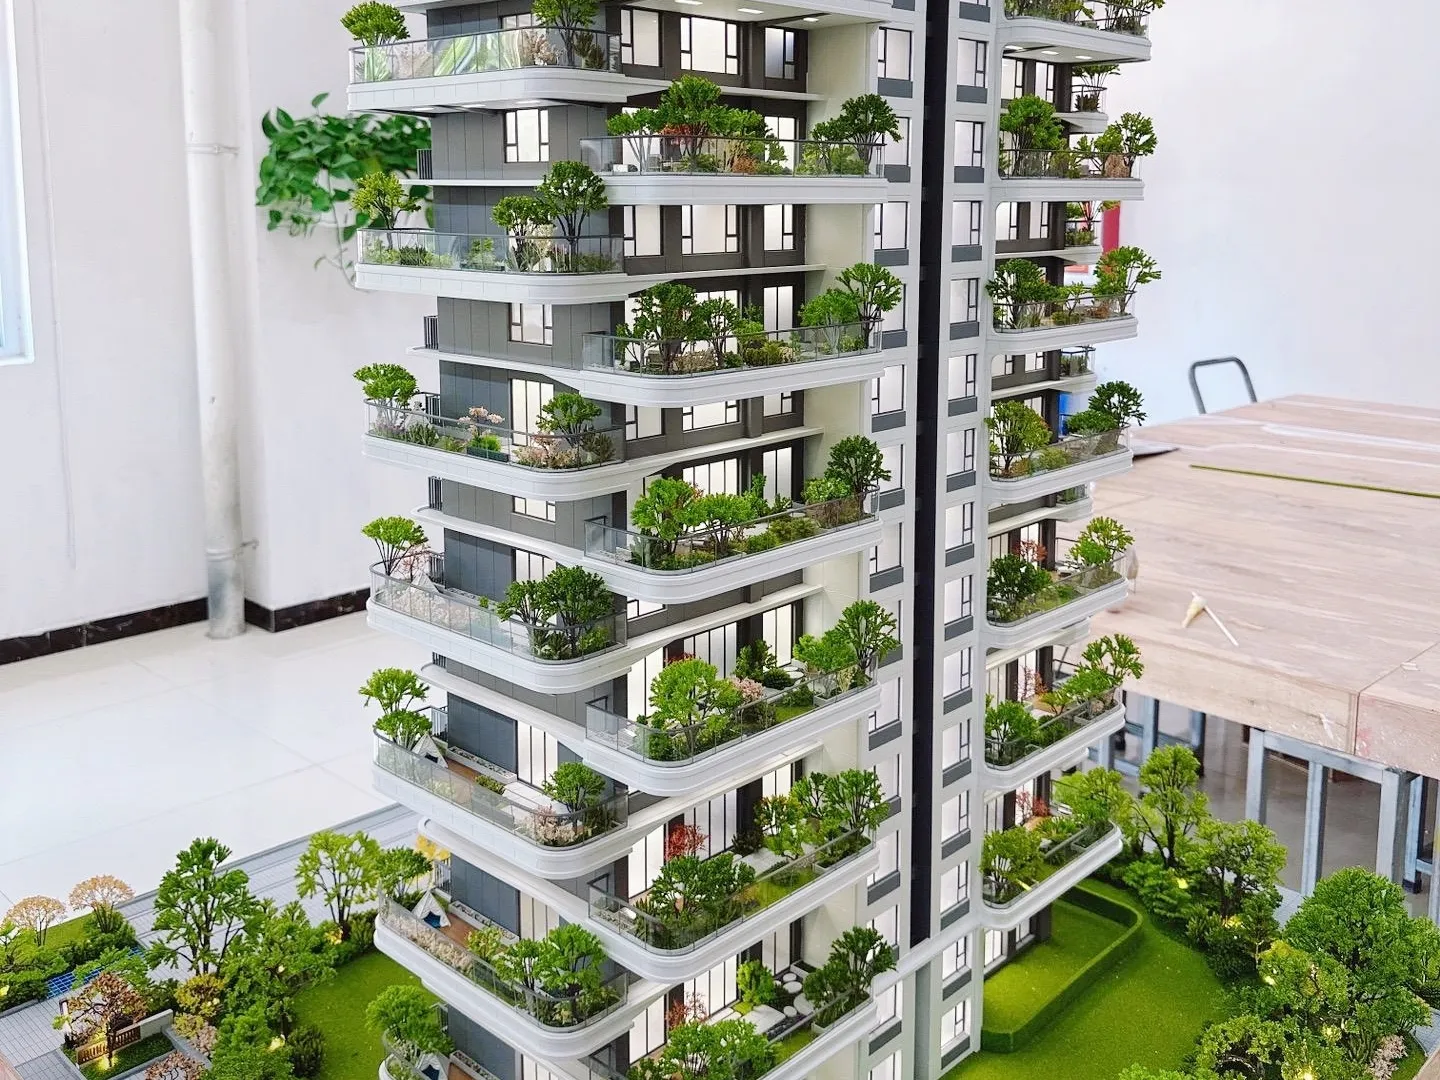 Fabrika özel emlak modeli ev planı mimari tasarım konak mimari ölçekli modeller mimari modeller